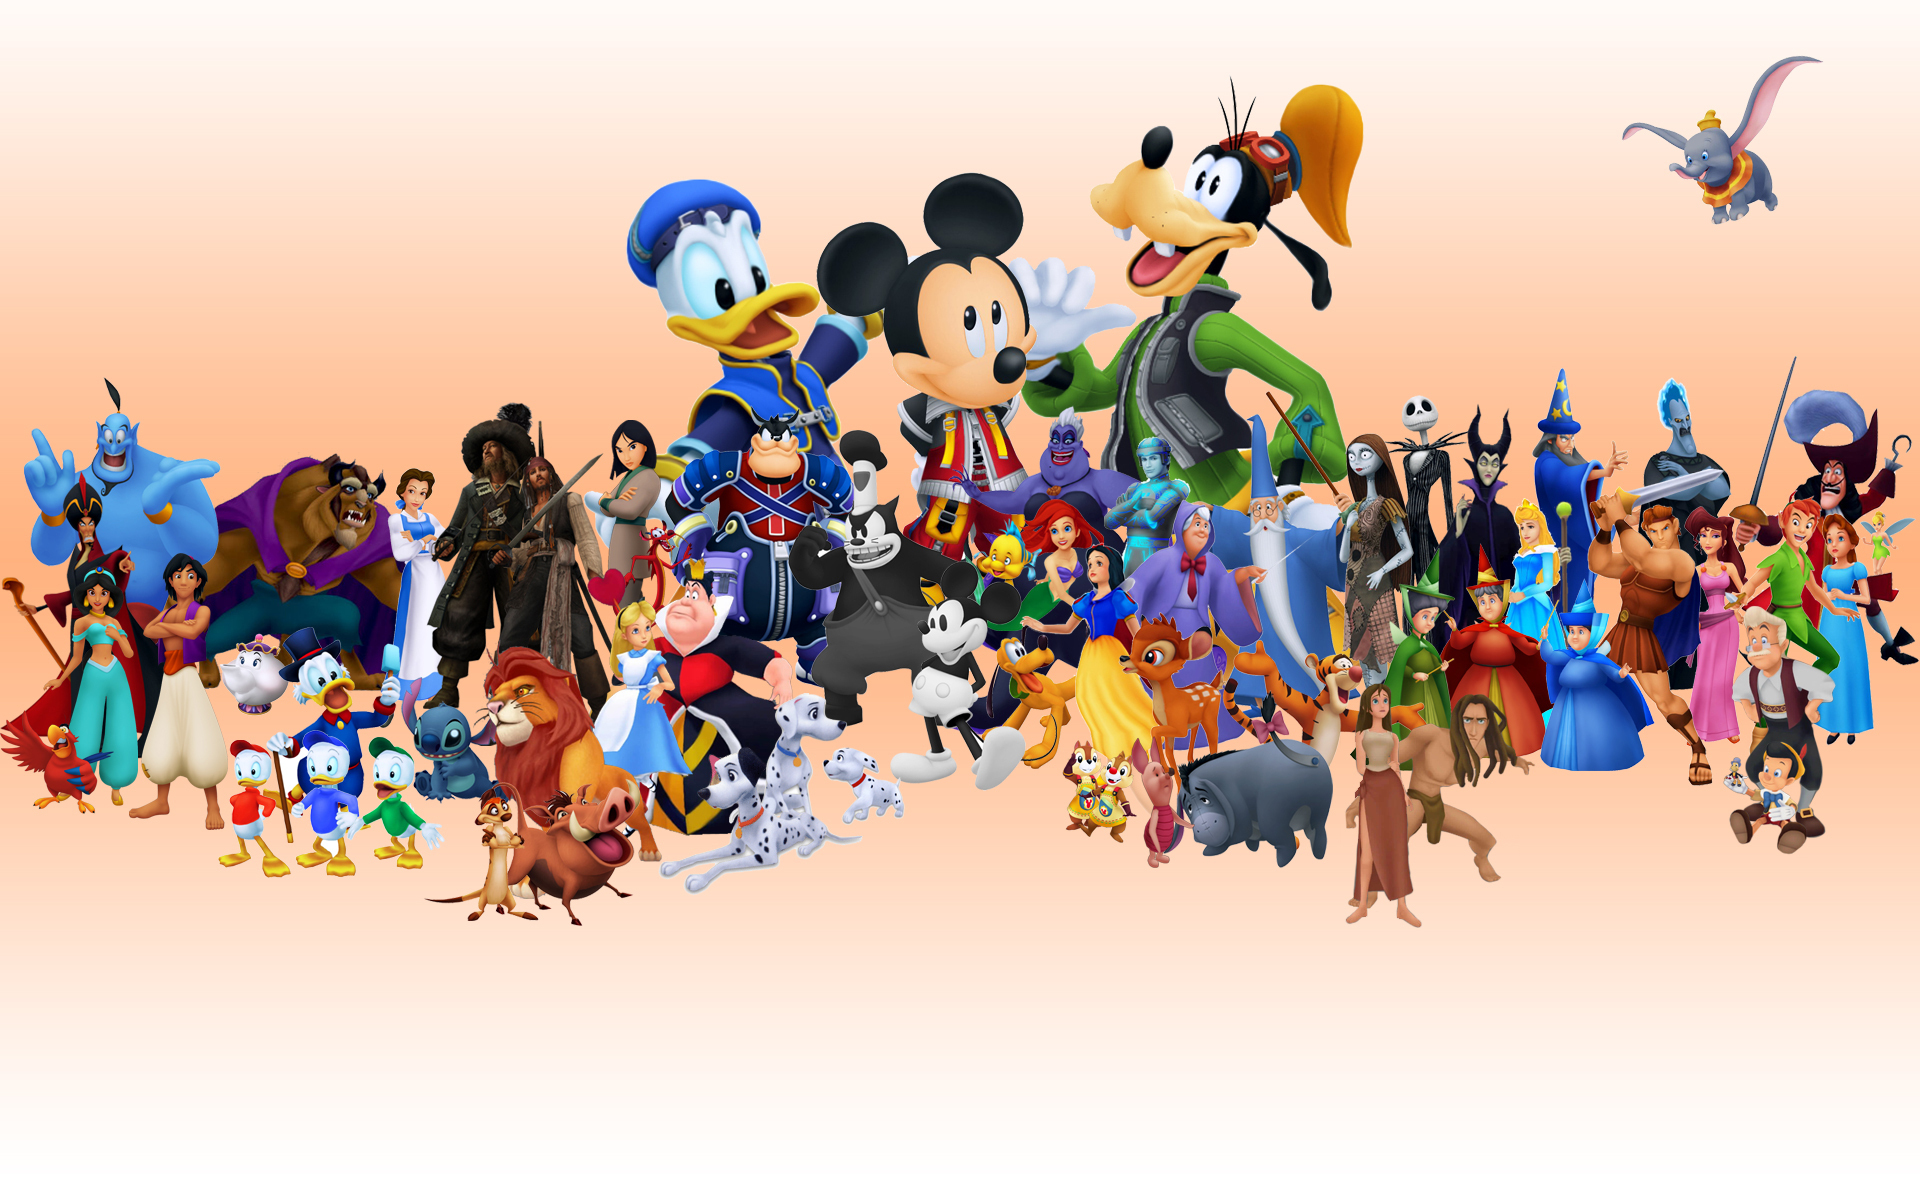 Disney Desktop Background Wallpaper Pictures In High